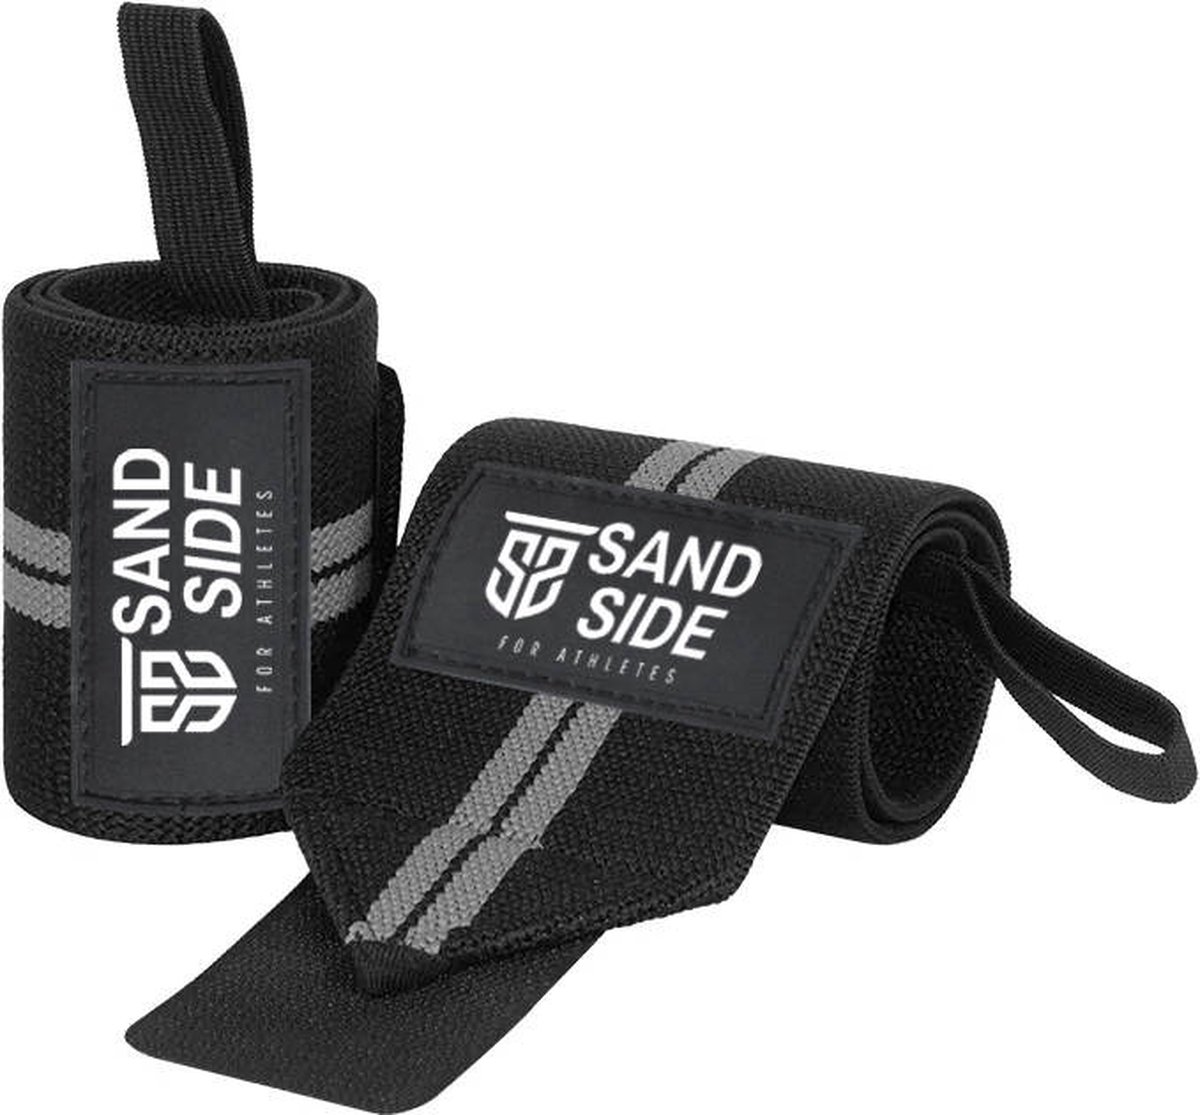 Sandside Wrist Wraps Premium - Crossfit en Ftiness Wrist Wraps - Ondersteuning voor Pols - Wrist Bands voor Krachttraining - Polsbandage - Wit